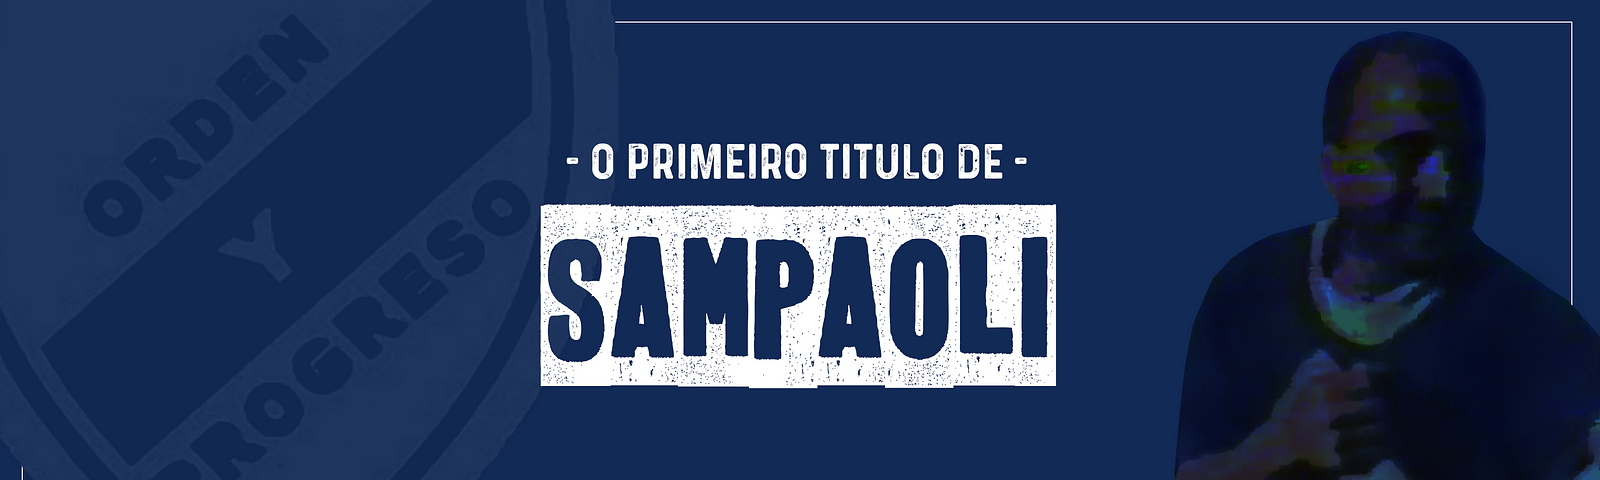 Jorge Sampaoli na época em que conquistou seu primeiro título. Foi em 1996, a Liga Casildense pelo Belgrano de Arequito.